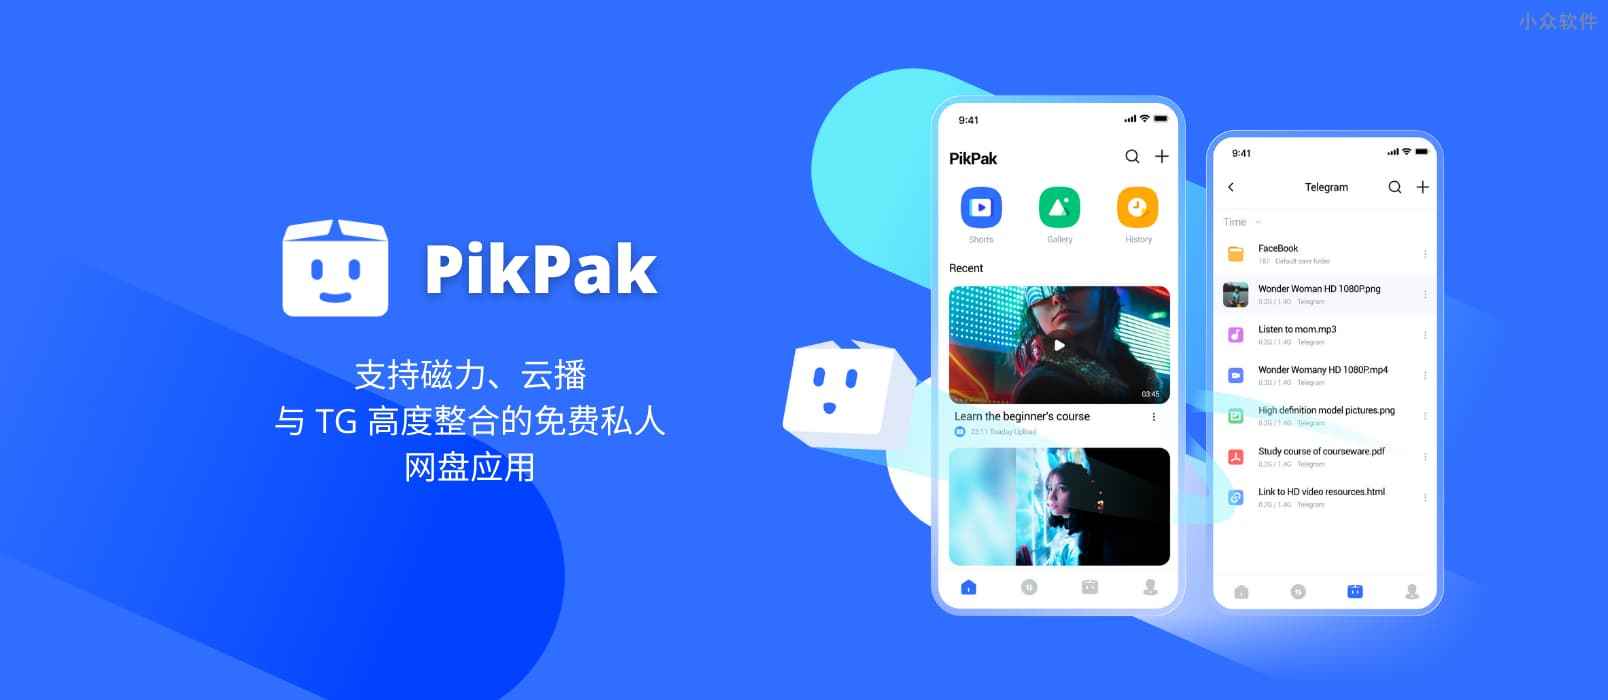 神级网盘 PikPak 发布 iOS 客户端、Chrome 扩展，支持离线下载、秒存、网盘、在线播放等功能